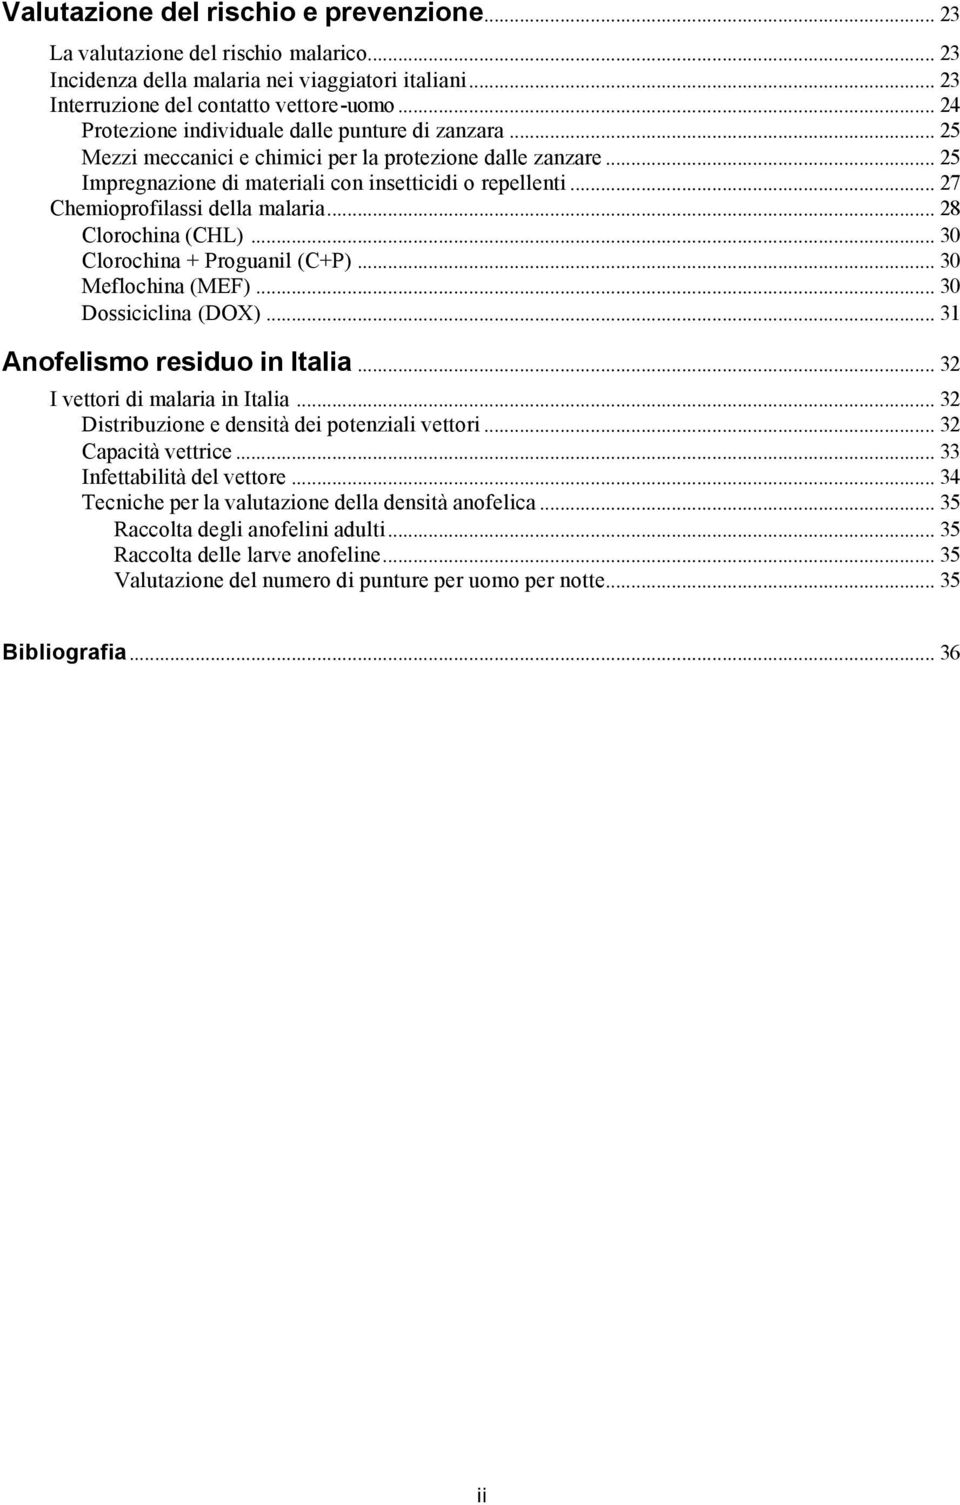 .. 27 Chemioprofilassi della malaria... 28 Clorochina (CHL)... 30 Clorochina + Proguanil (C+P)... 30 Meflochina (MEF)... 30 Dossiciclina (DOX)... 31 Anofelismo residuo in Italia.